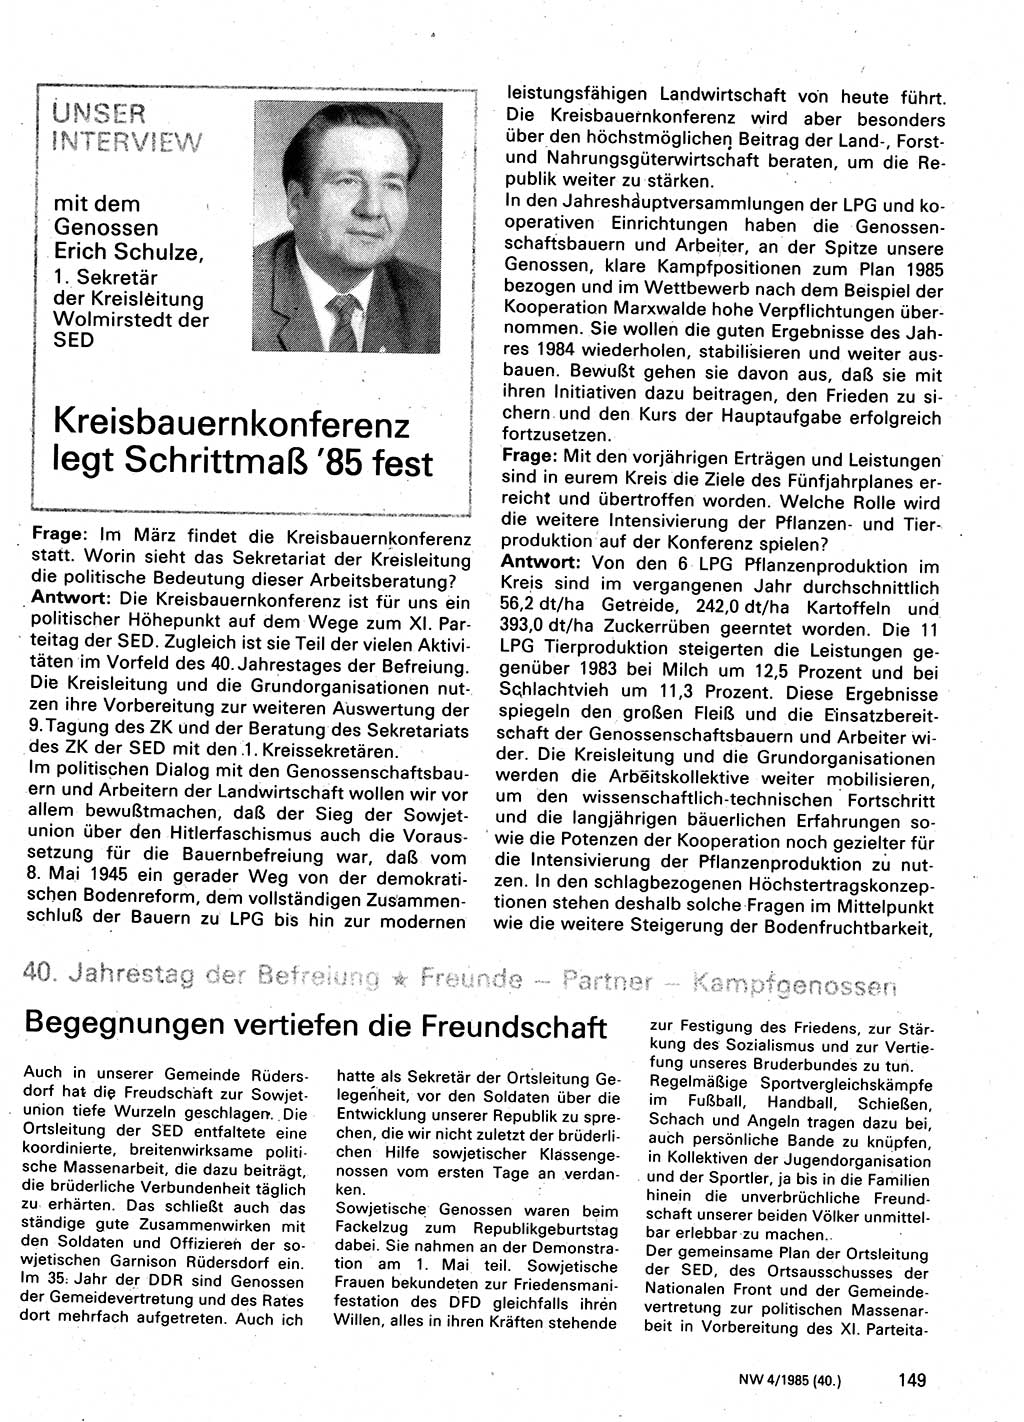 Neuer Weg (NW), Organ des Zentralkomitees (ZK) der SED (Sozialistische Einheitspartei Deutschlands) für Fragen des Parteilebens, 40. Jahrgang [Deutsche Demokratische Republik (DDR)] 1985, Seite 149 (NW ZK SED DDR 1985, S. 149)